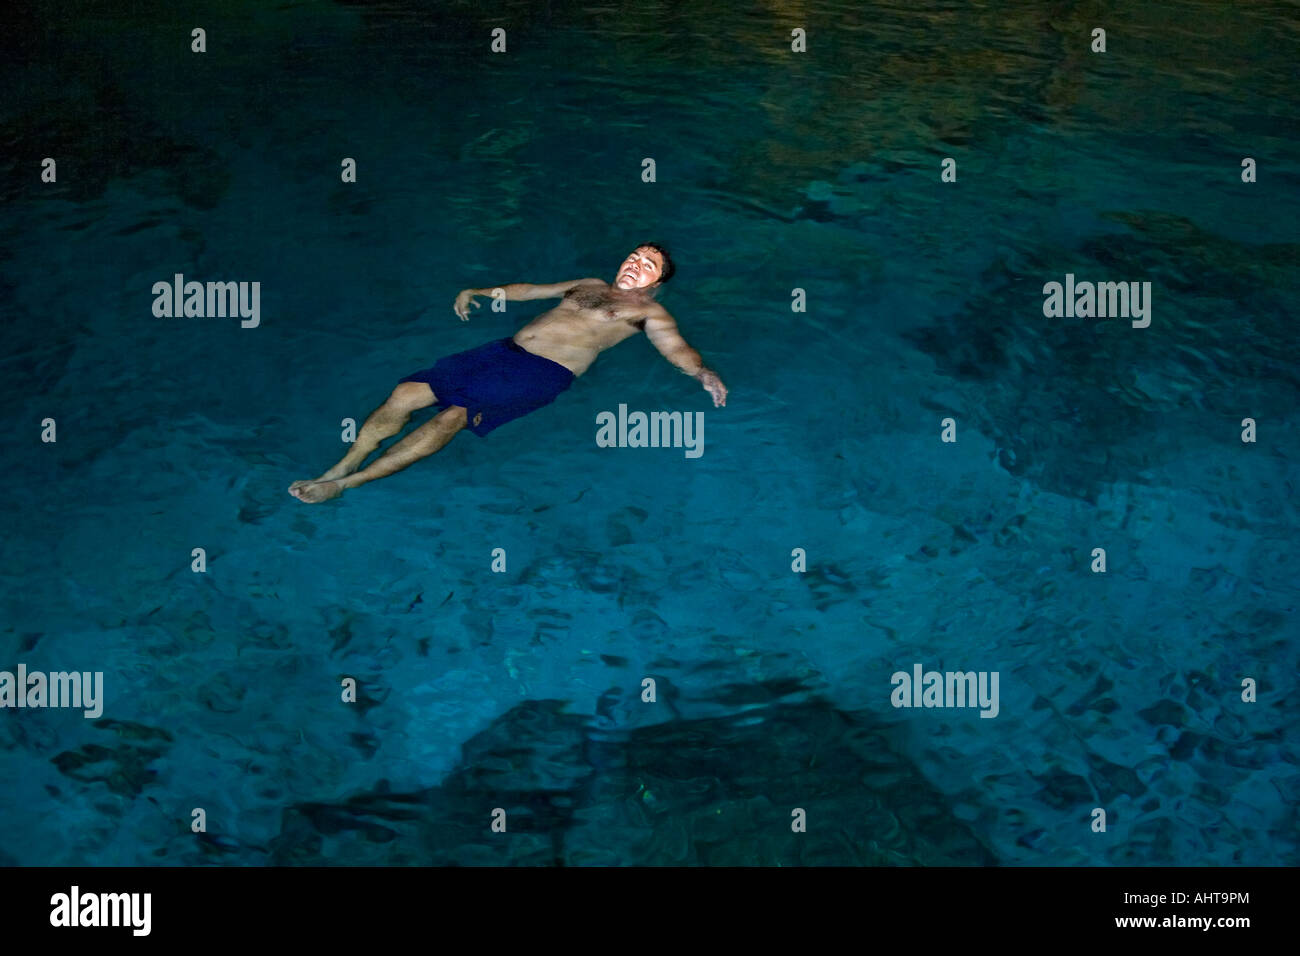 Ein Schwimmer schwimmt auf dem Rücken in der Cenote "Zwei Augen" (Mexiko). Homme Faisant la Planche Dans le Cénote Dos Ojos (Mexiko). Stockfoto